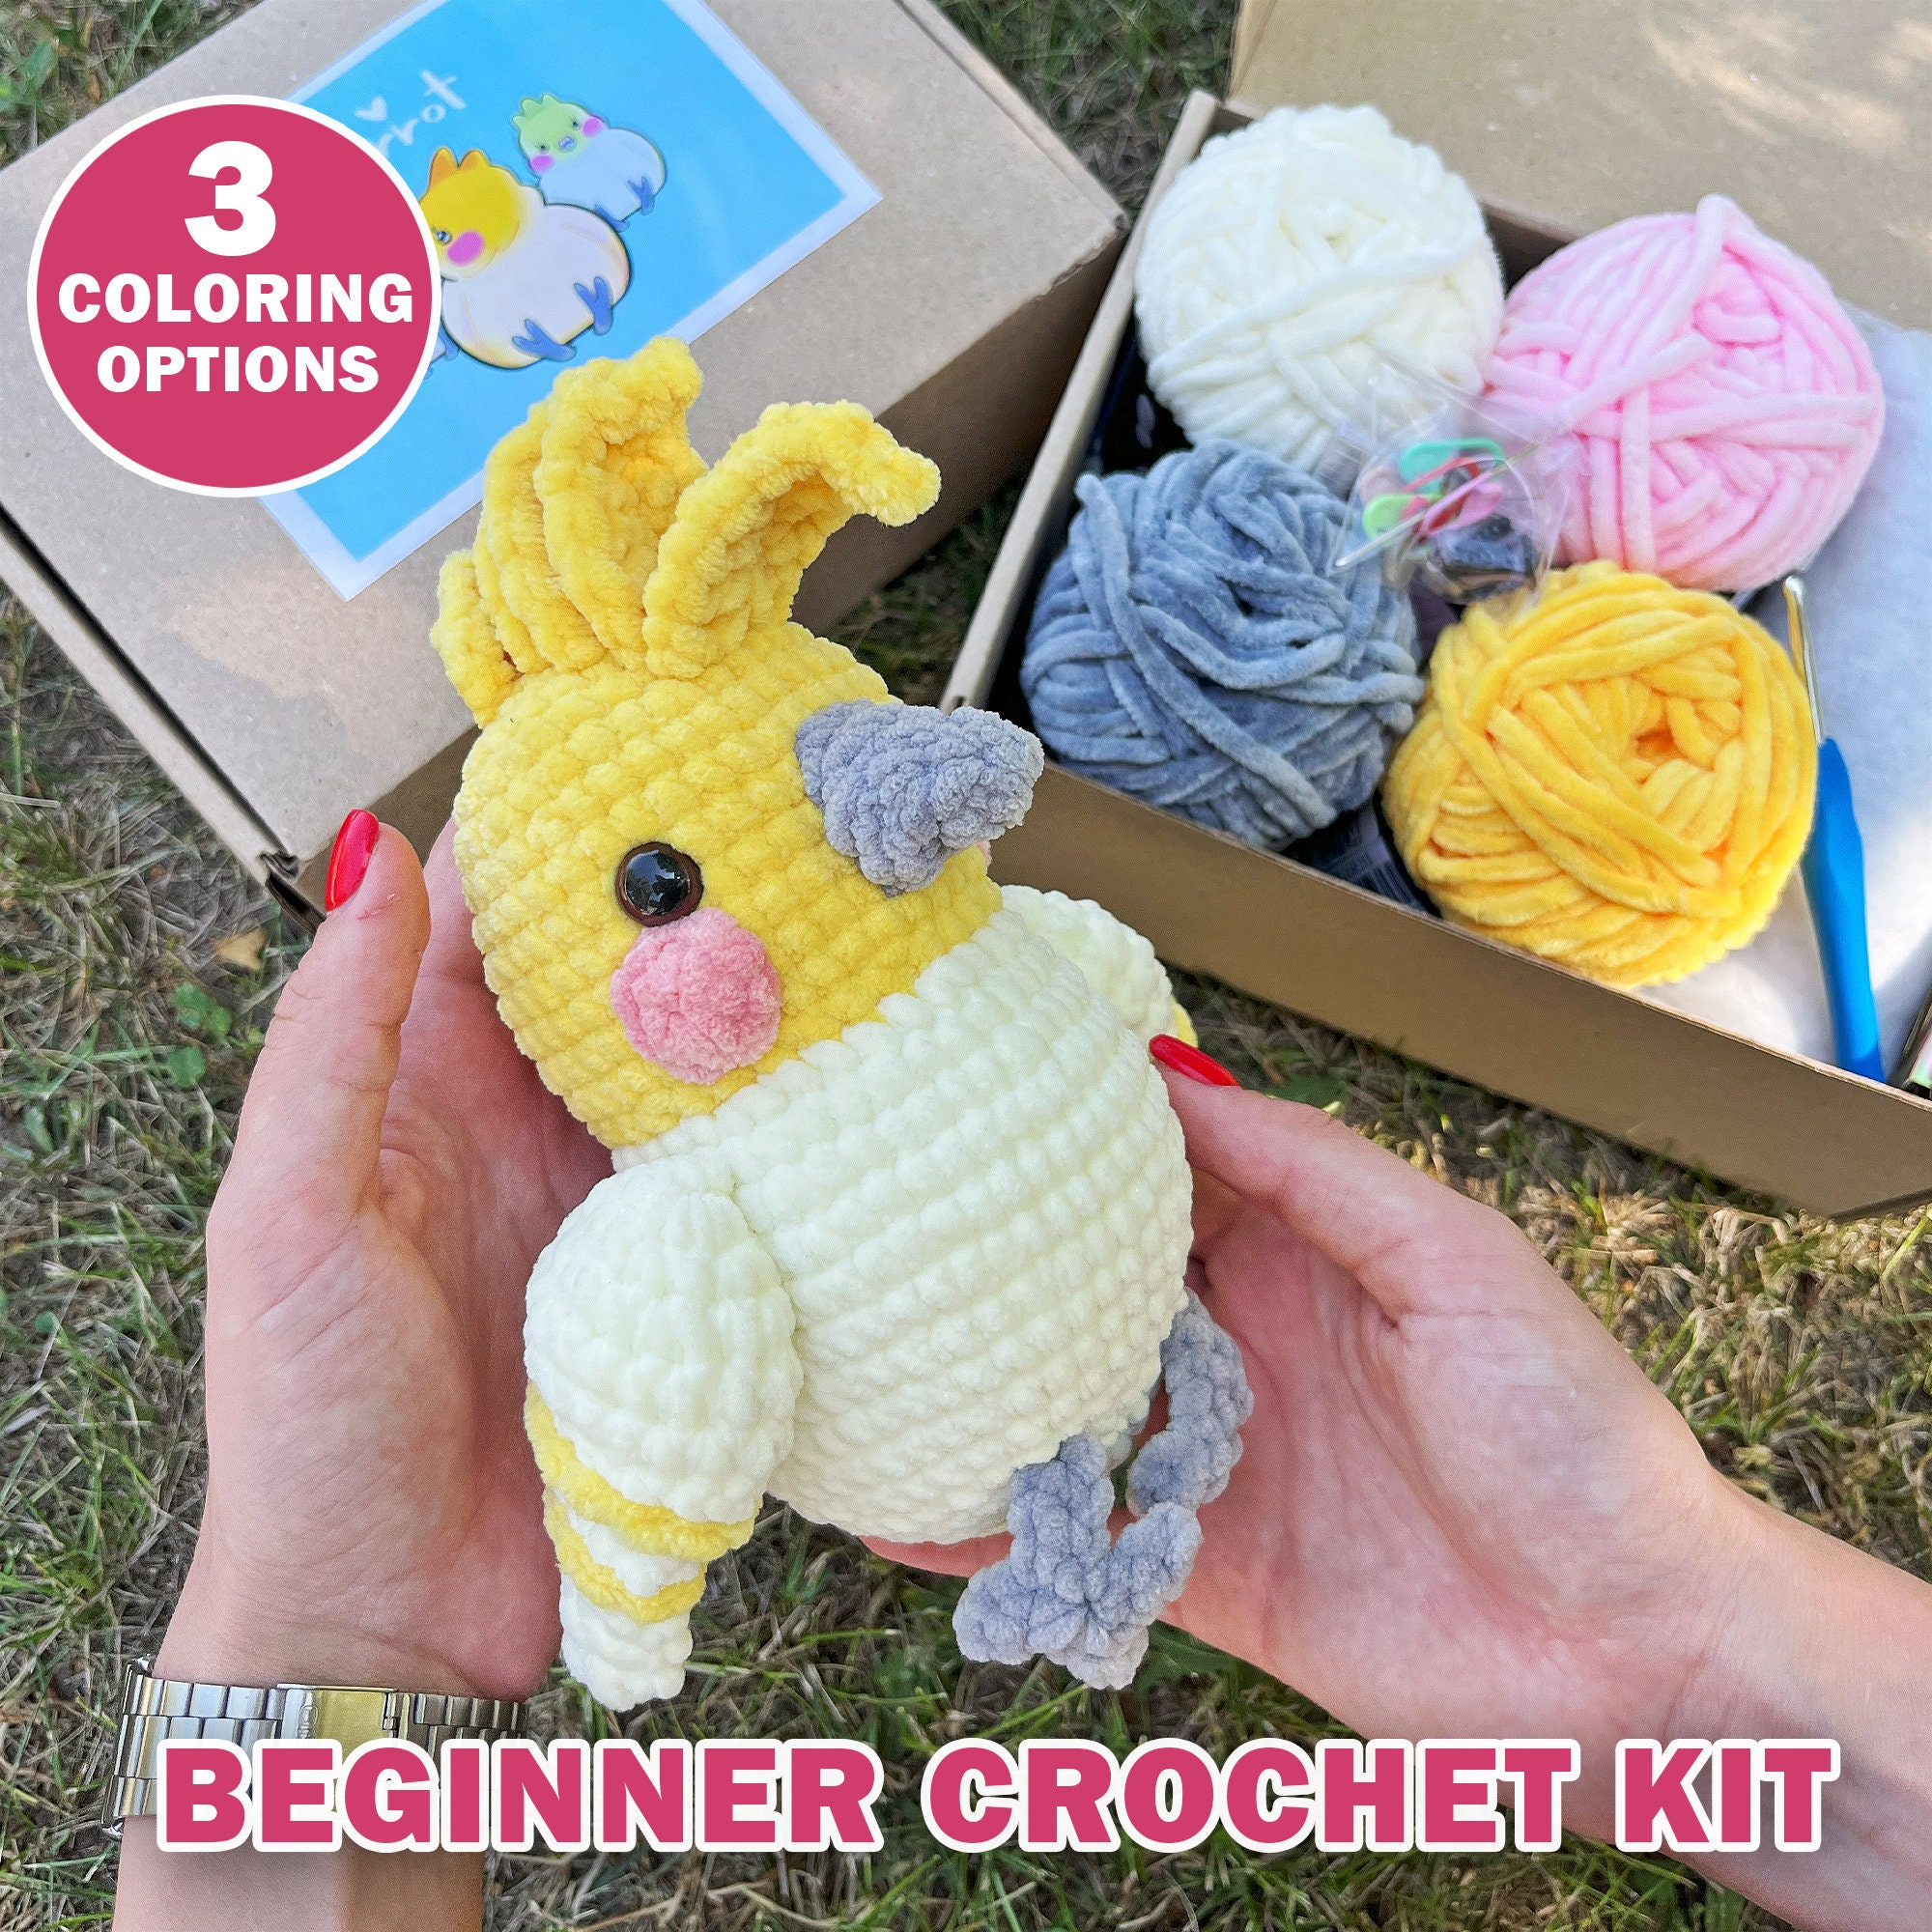 Crochet Kit For Beginners Crochet Starter Kit Learn To Crochet